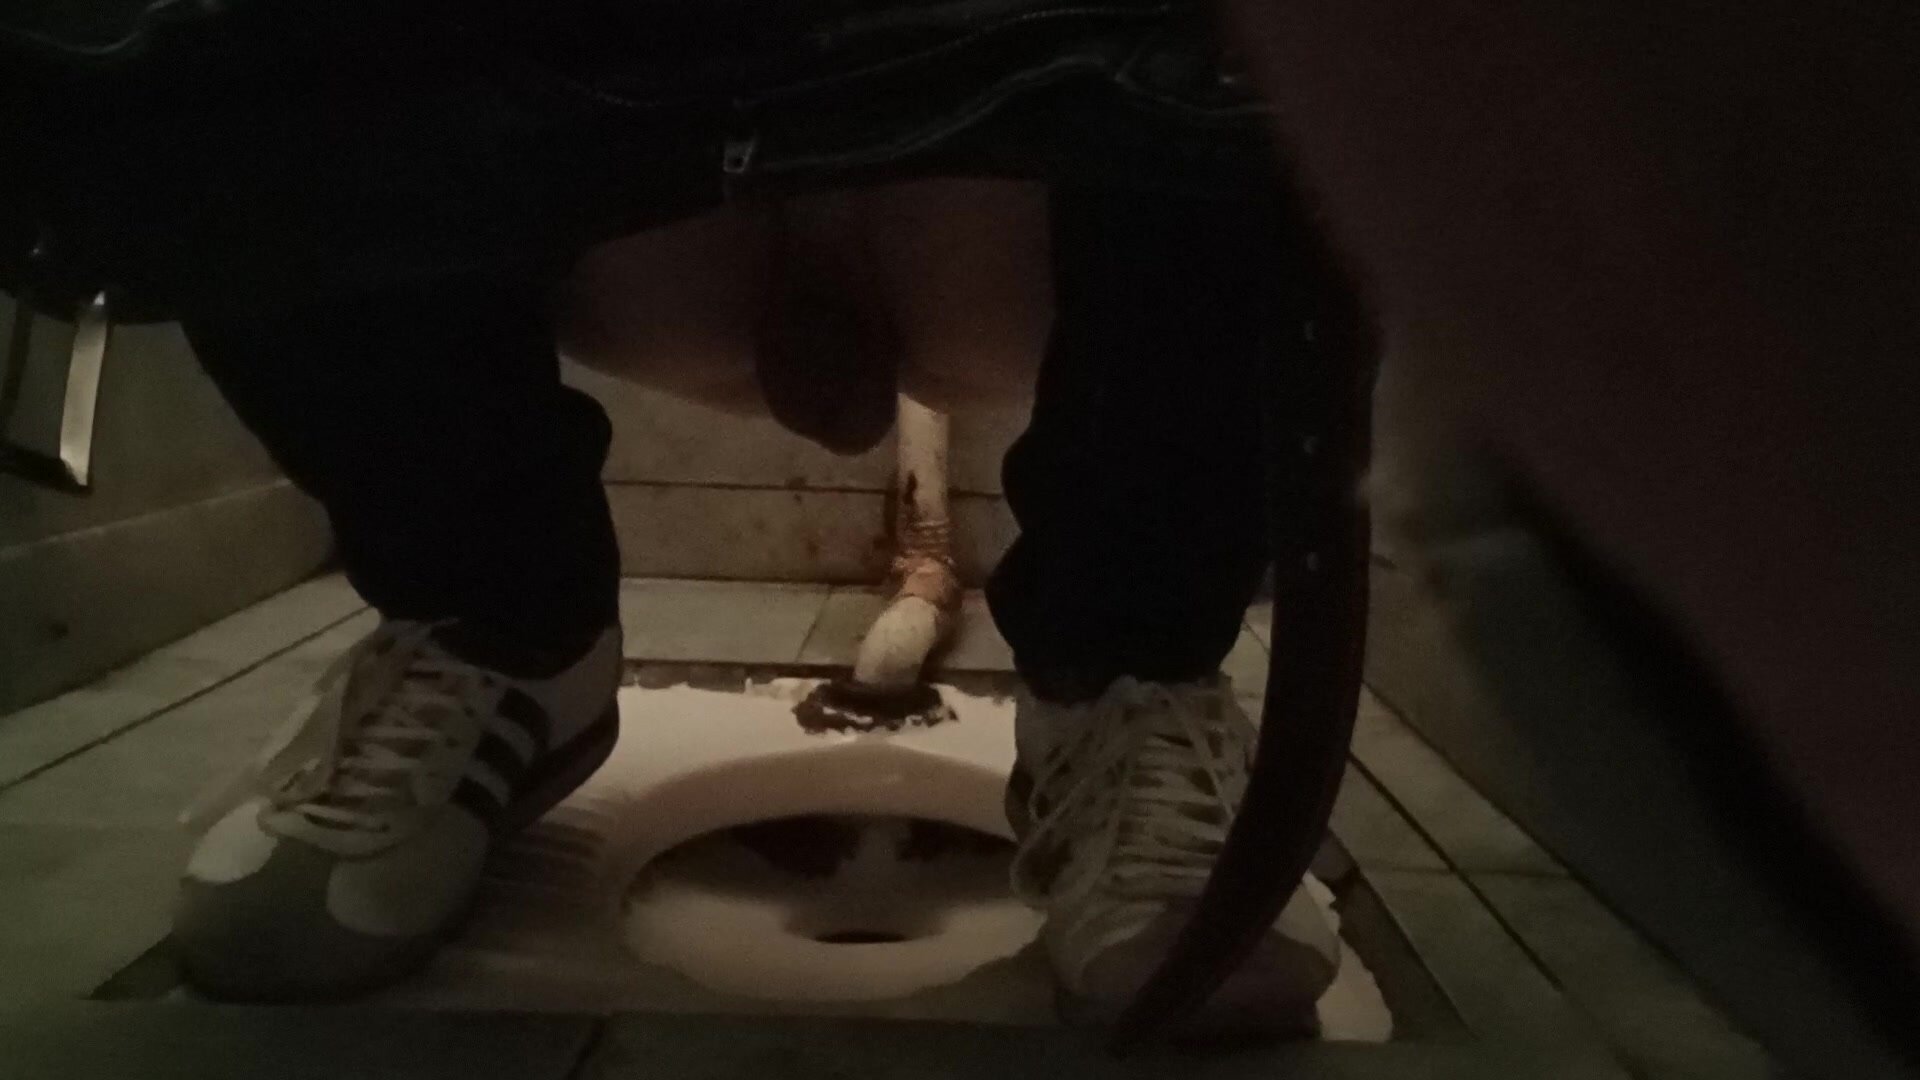 I shitted in public toilet of Skopje